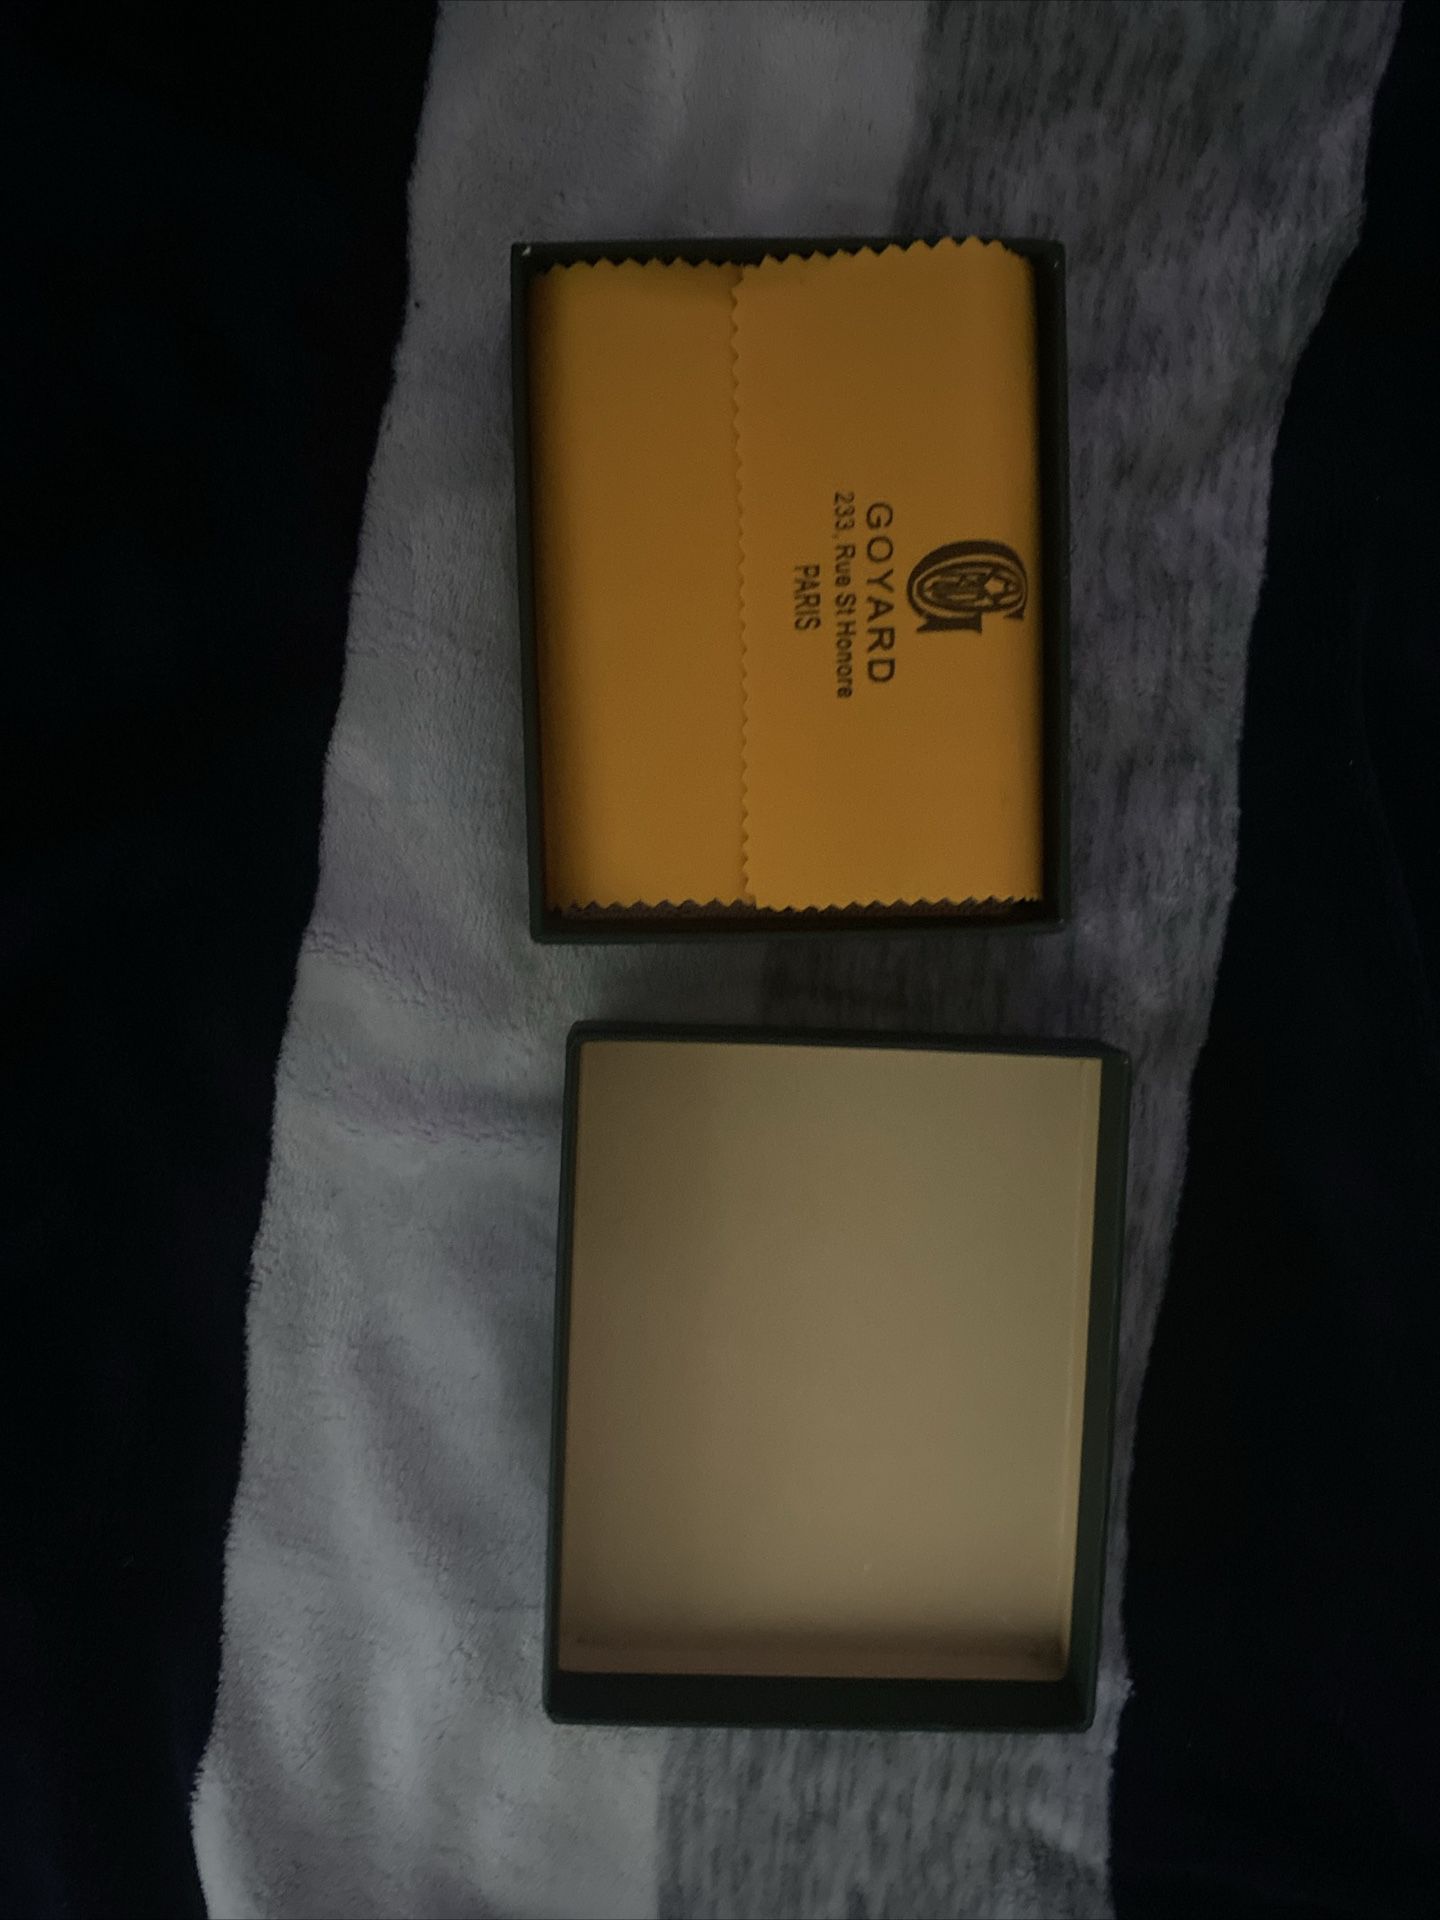 White Goyard Wallet 